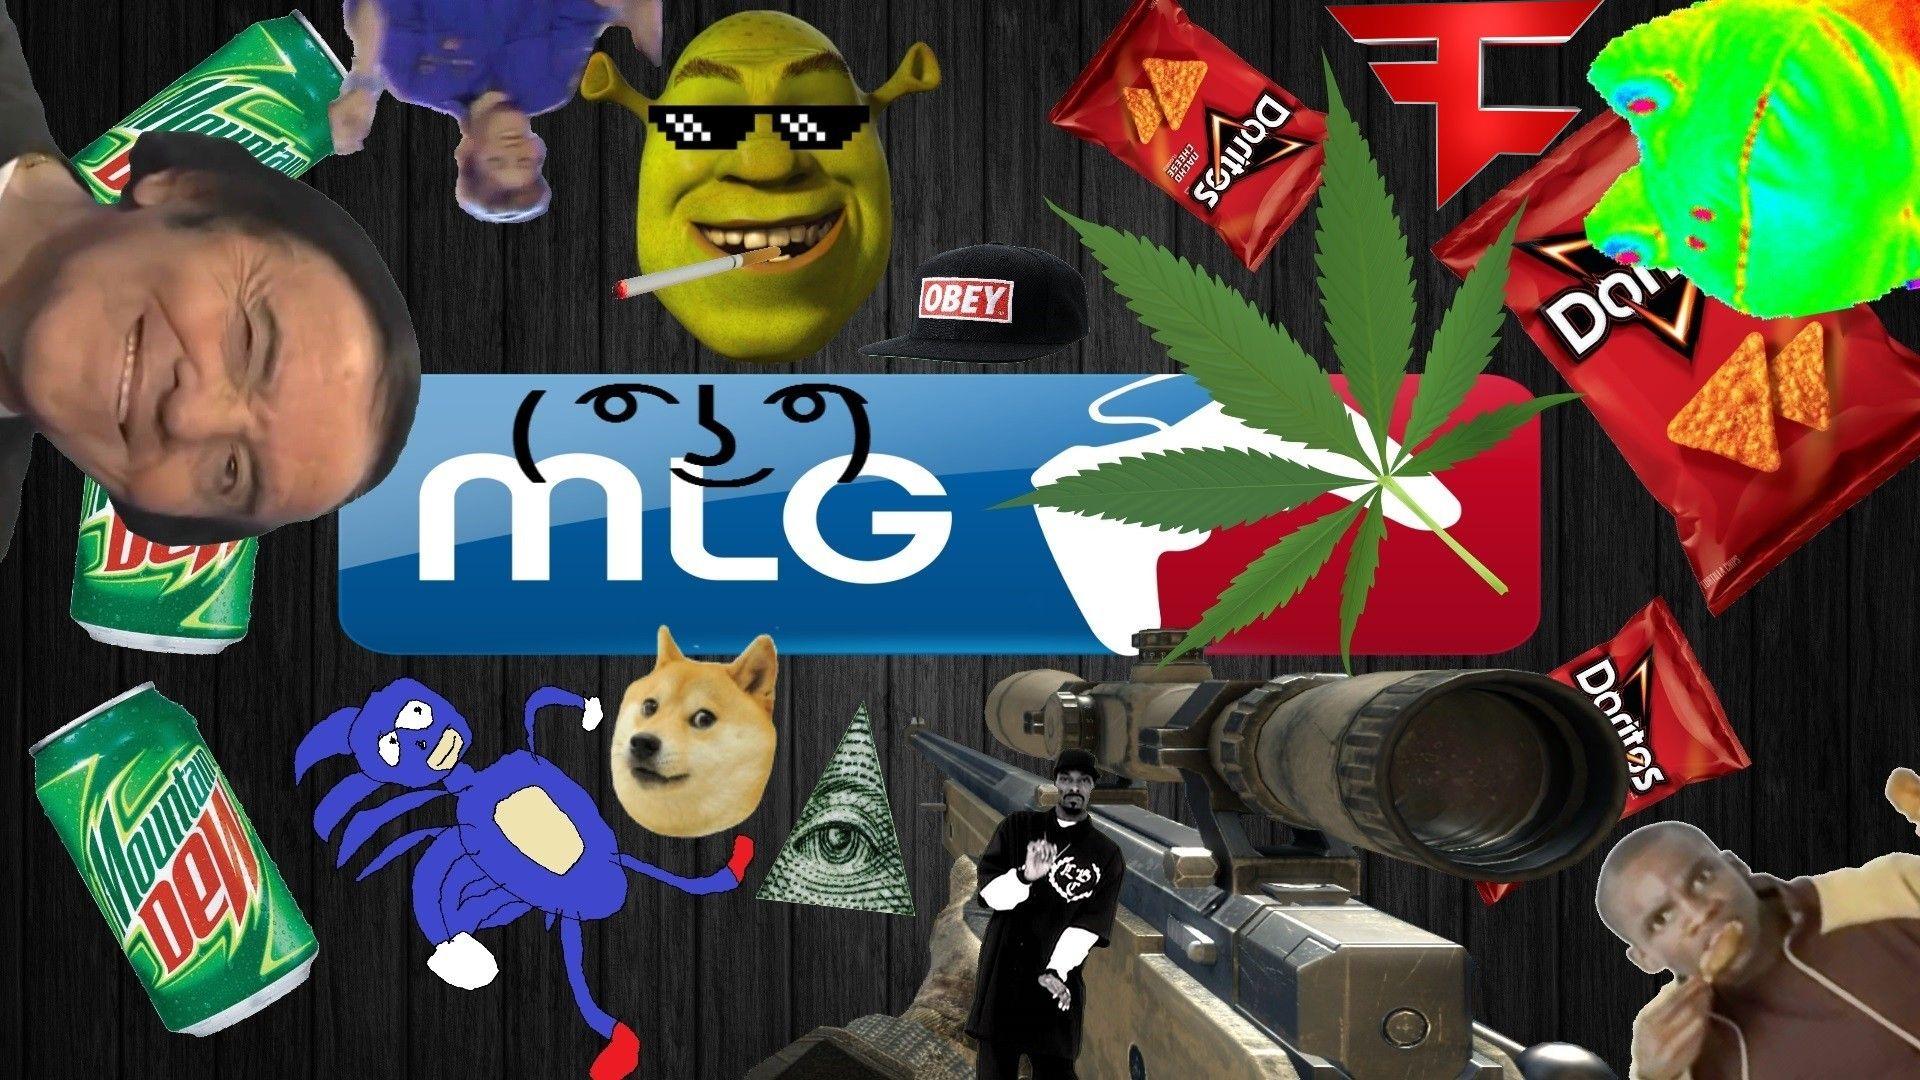 MLG wallpaper.com Wallpaper